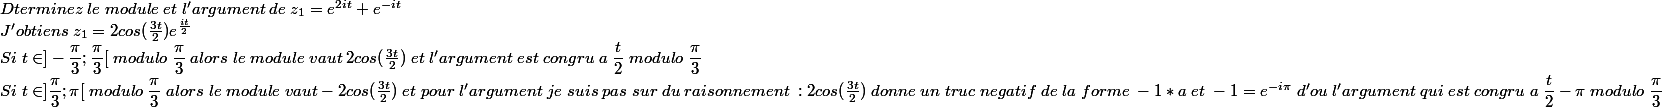 
 \\ 
 \\ Dterminez\;le\;module\;et\;l'argument\;de\;z_{1}=e^{2it}+e^{-it}\\J'obtiens\;z_{1}=2cos(\frac{3t}{2})e^{\frac{it}{2}}\\Si\;t\in ]-\dfrac{\pi}{3};\dfrac{\pi}{3}[\;modulo\;\dfrac{\pi}{3}\;alors\;le\;module\;vaut\;2cos(\frac{3t}{2})\;et\;l'argument\;est\;congru\;a\;\dfrac{t}{2}\;modulo\;\dfrac{\pi}{3}\\Si\;t\in]\dfrac{\pi}{3};\pi[\;modulo\;\dfrac{\pi}{3}\;alors\;le\;module\;vaut -2cos(\frac{3t}{2})\;et\;pour\;l'argument\;je\;suis\;pas\;sur\;du\;raisonnement\; : 2cos(\frac{3t}{2})\;donne\;un\;truc\;negatif\;de\;la\;forme\;-1*a\;et\;-1=e^{-i\pi}\;d'ou \;l'argument\;qui\;est\;congru\;a\;\dfrac{t}{2}-\pi\;modulo\;\dfrac{\pi}{3}
 \\ 